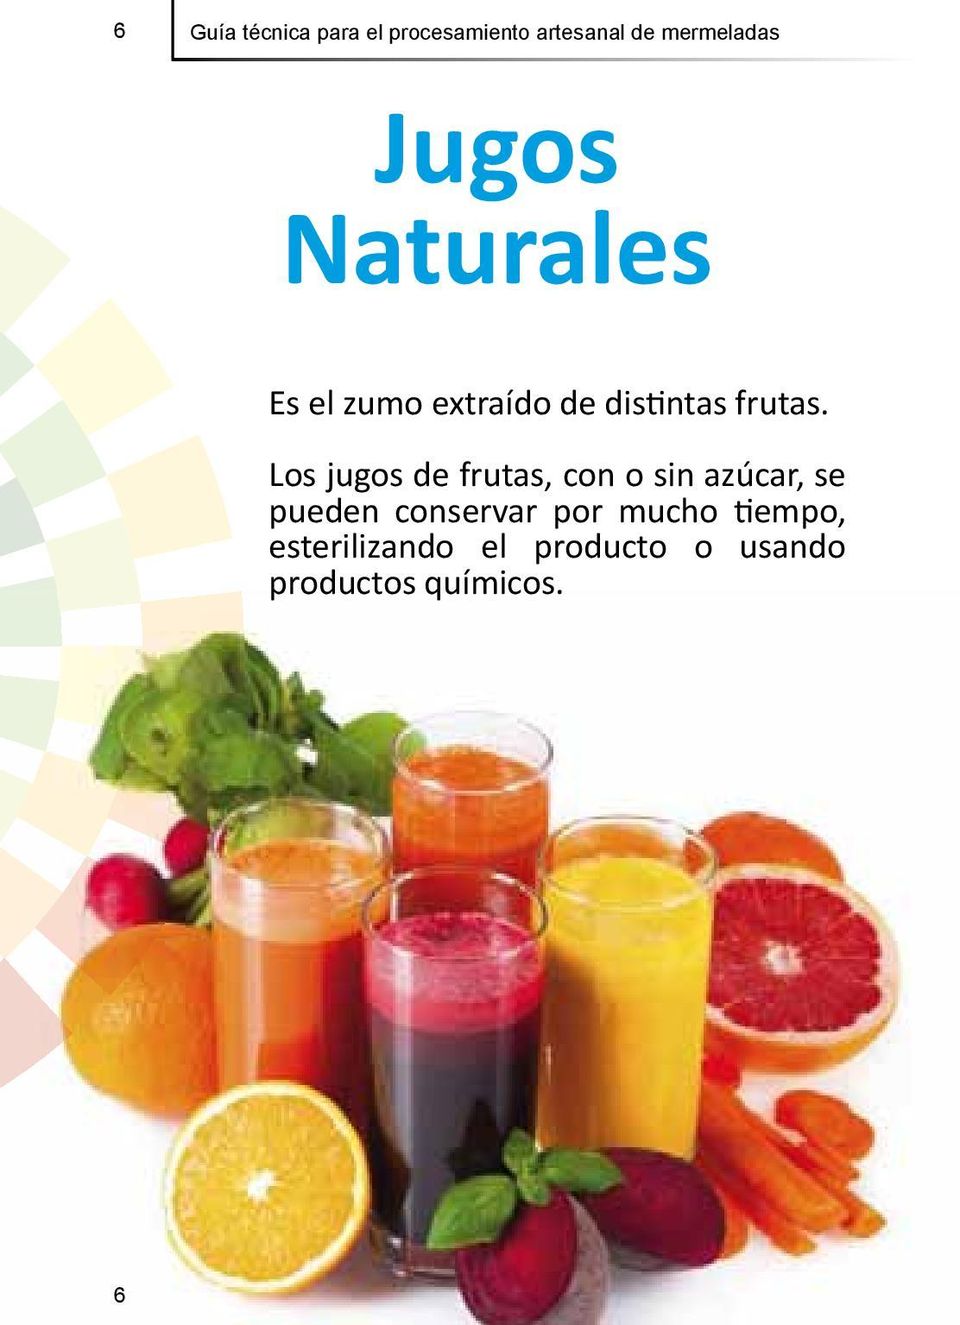 Los jugos de frutas, con o sin azúcar, se pueden conservar por